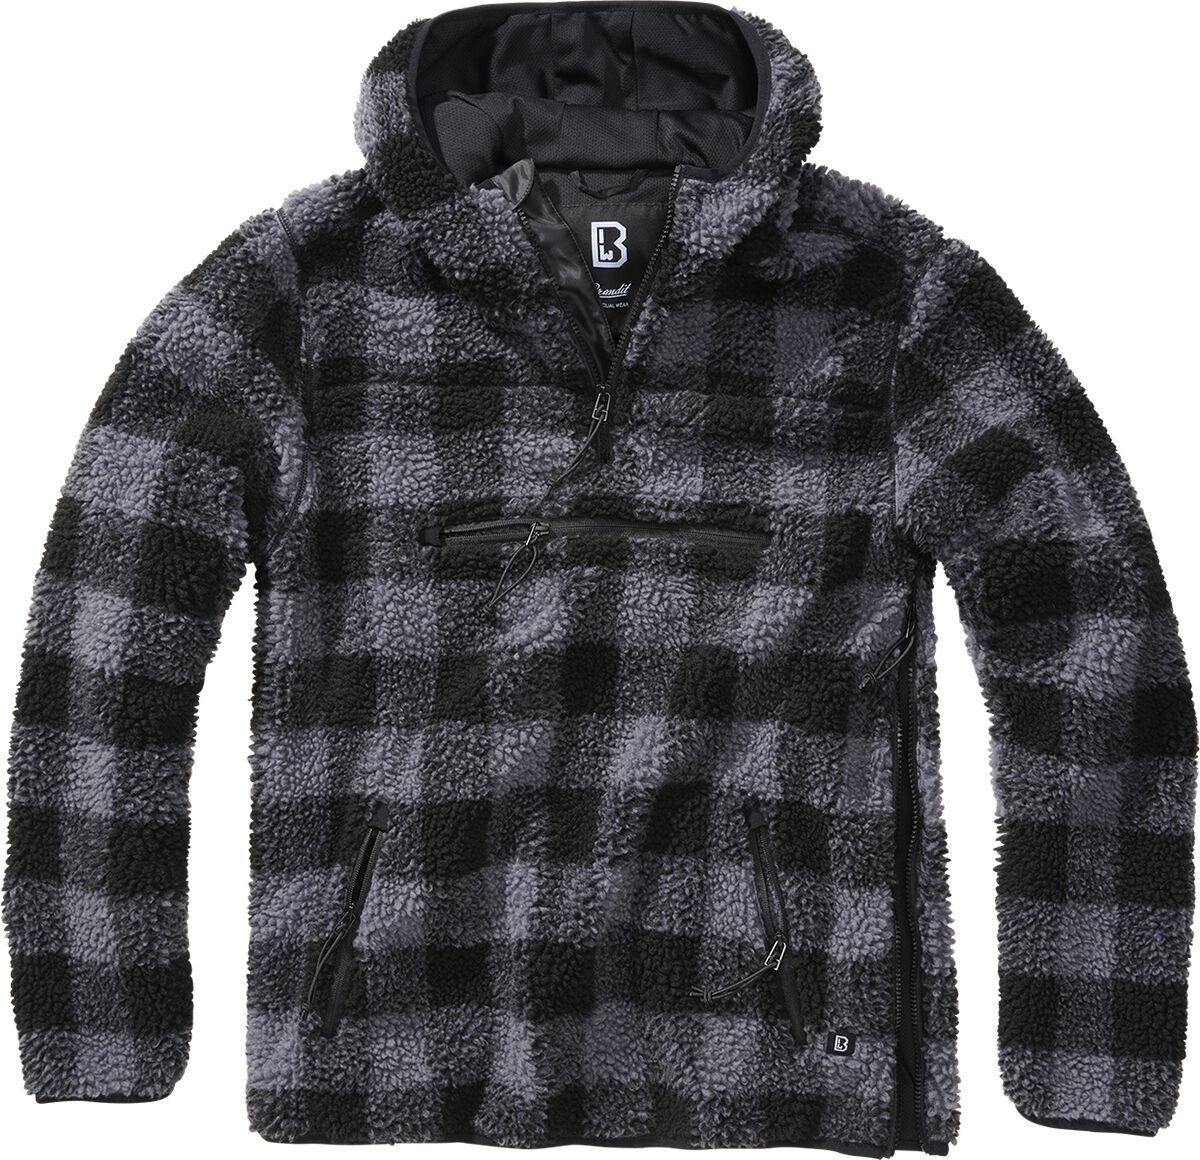 Brandit Teddyfleece Worker Pullover Kapuzenpullover schwarz grau in XL